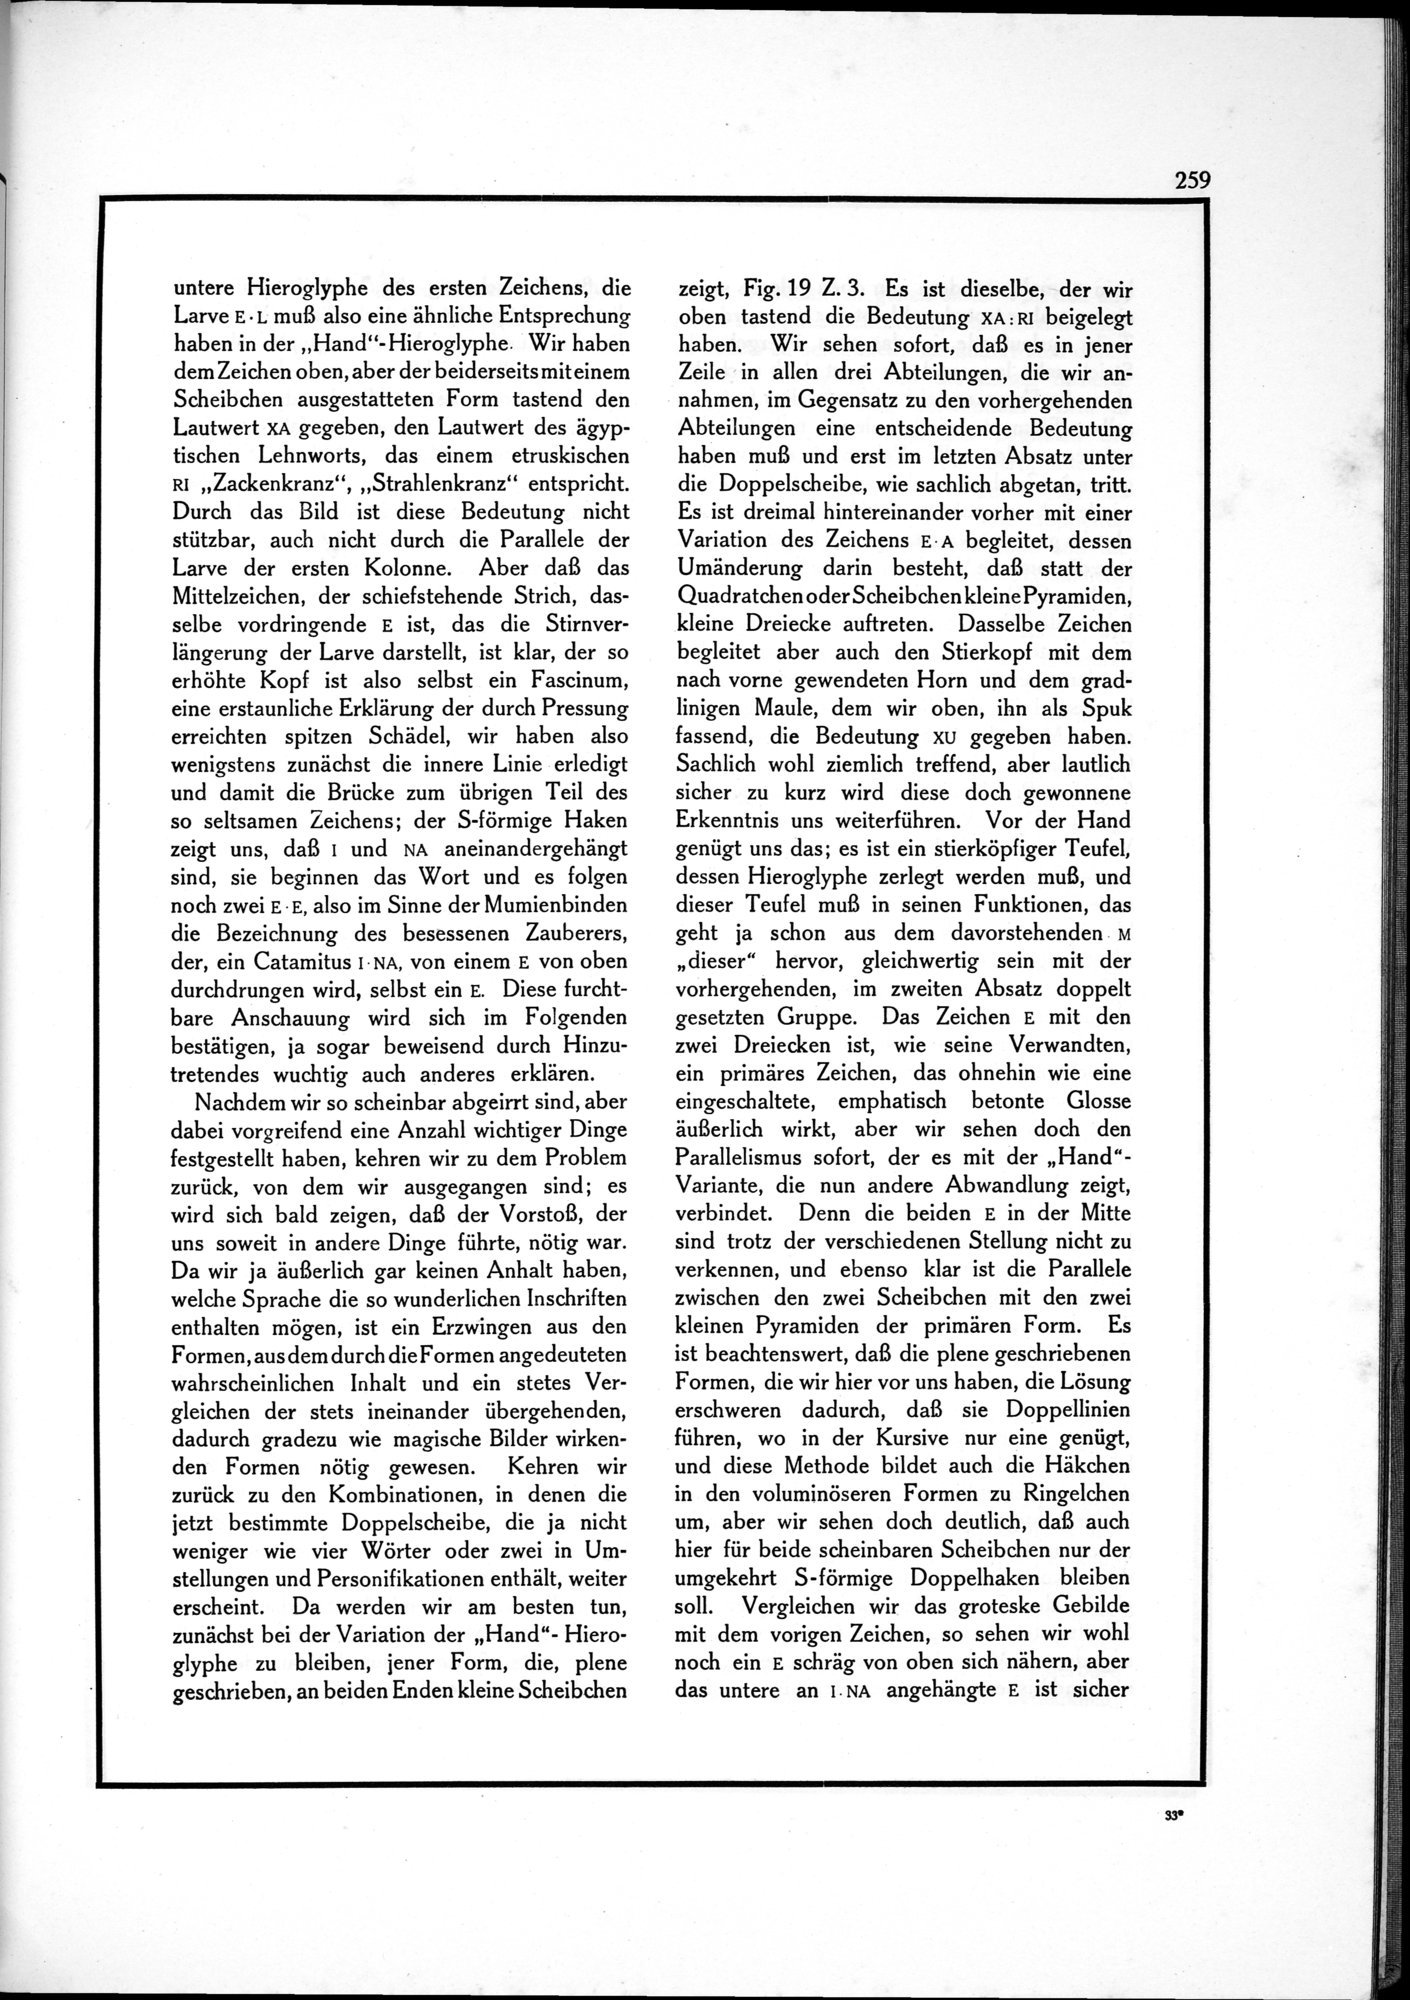 Die Teufel des Avesta und Ihre Beziehungen zur Ikonographie des Buddhismus Zentral-Asiens : vol.1 / Page 263 (Grayscale High Resolution Image)